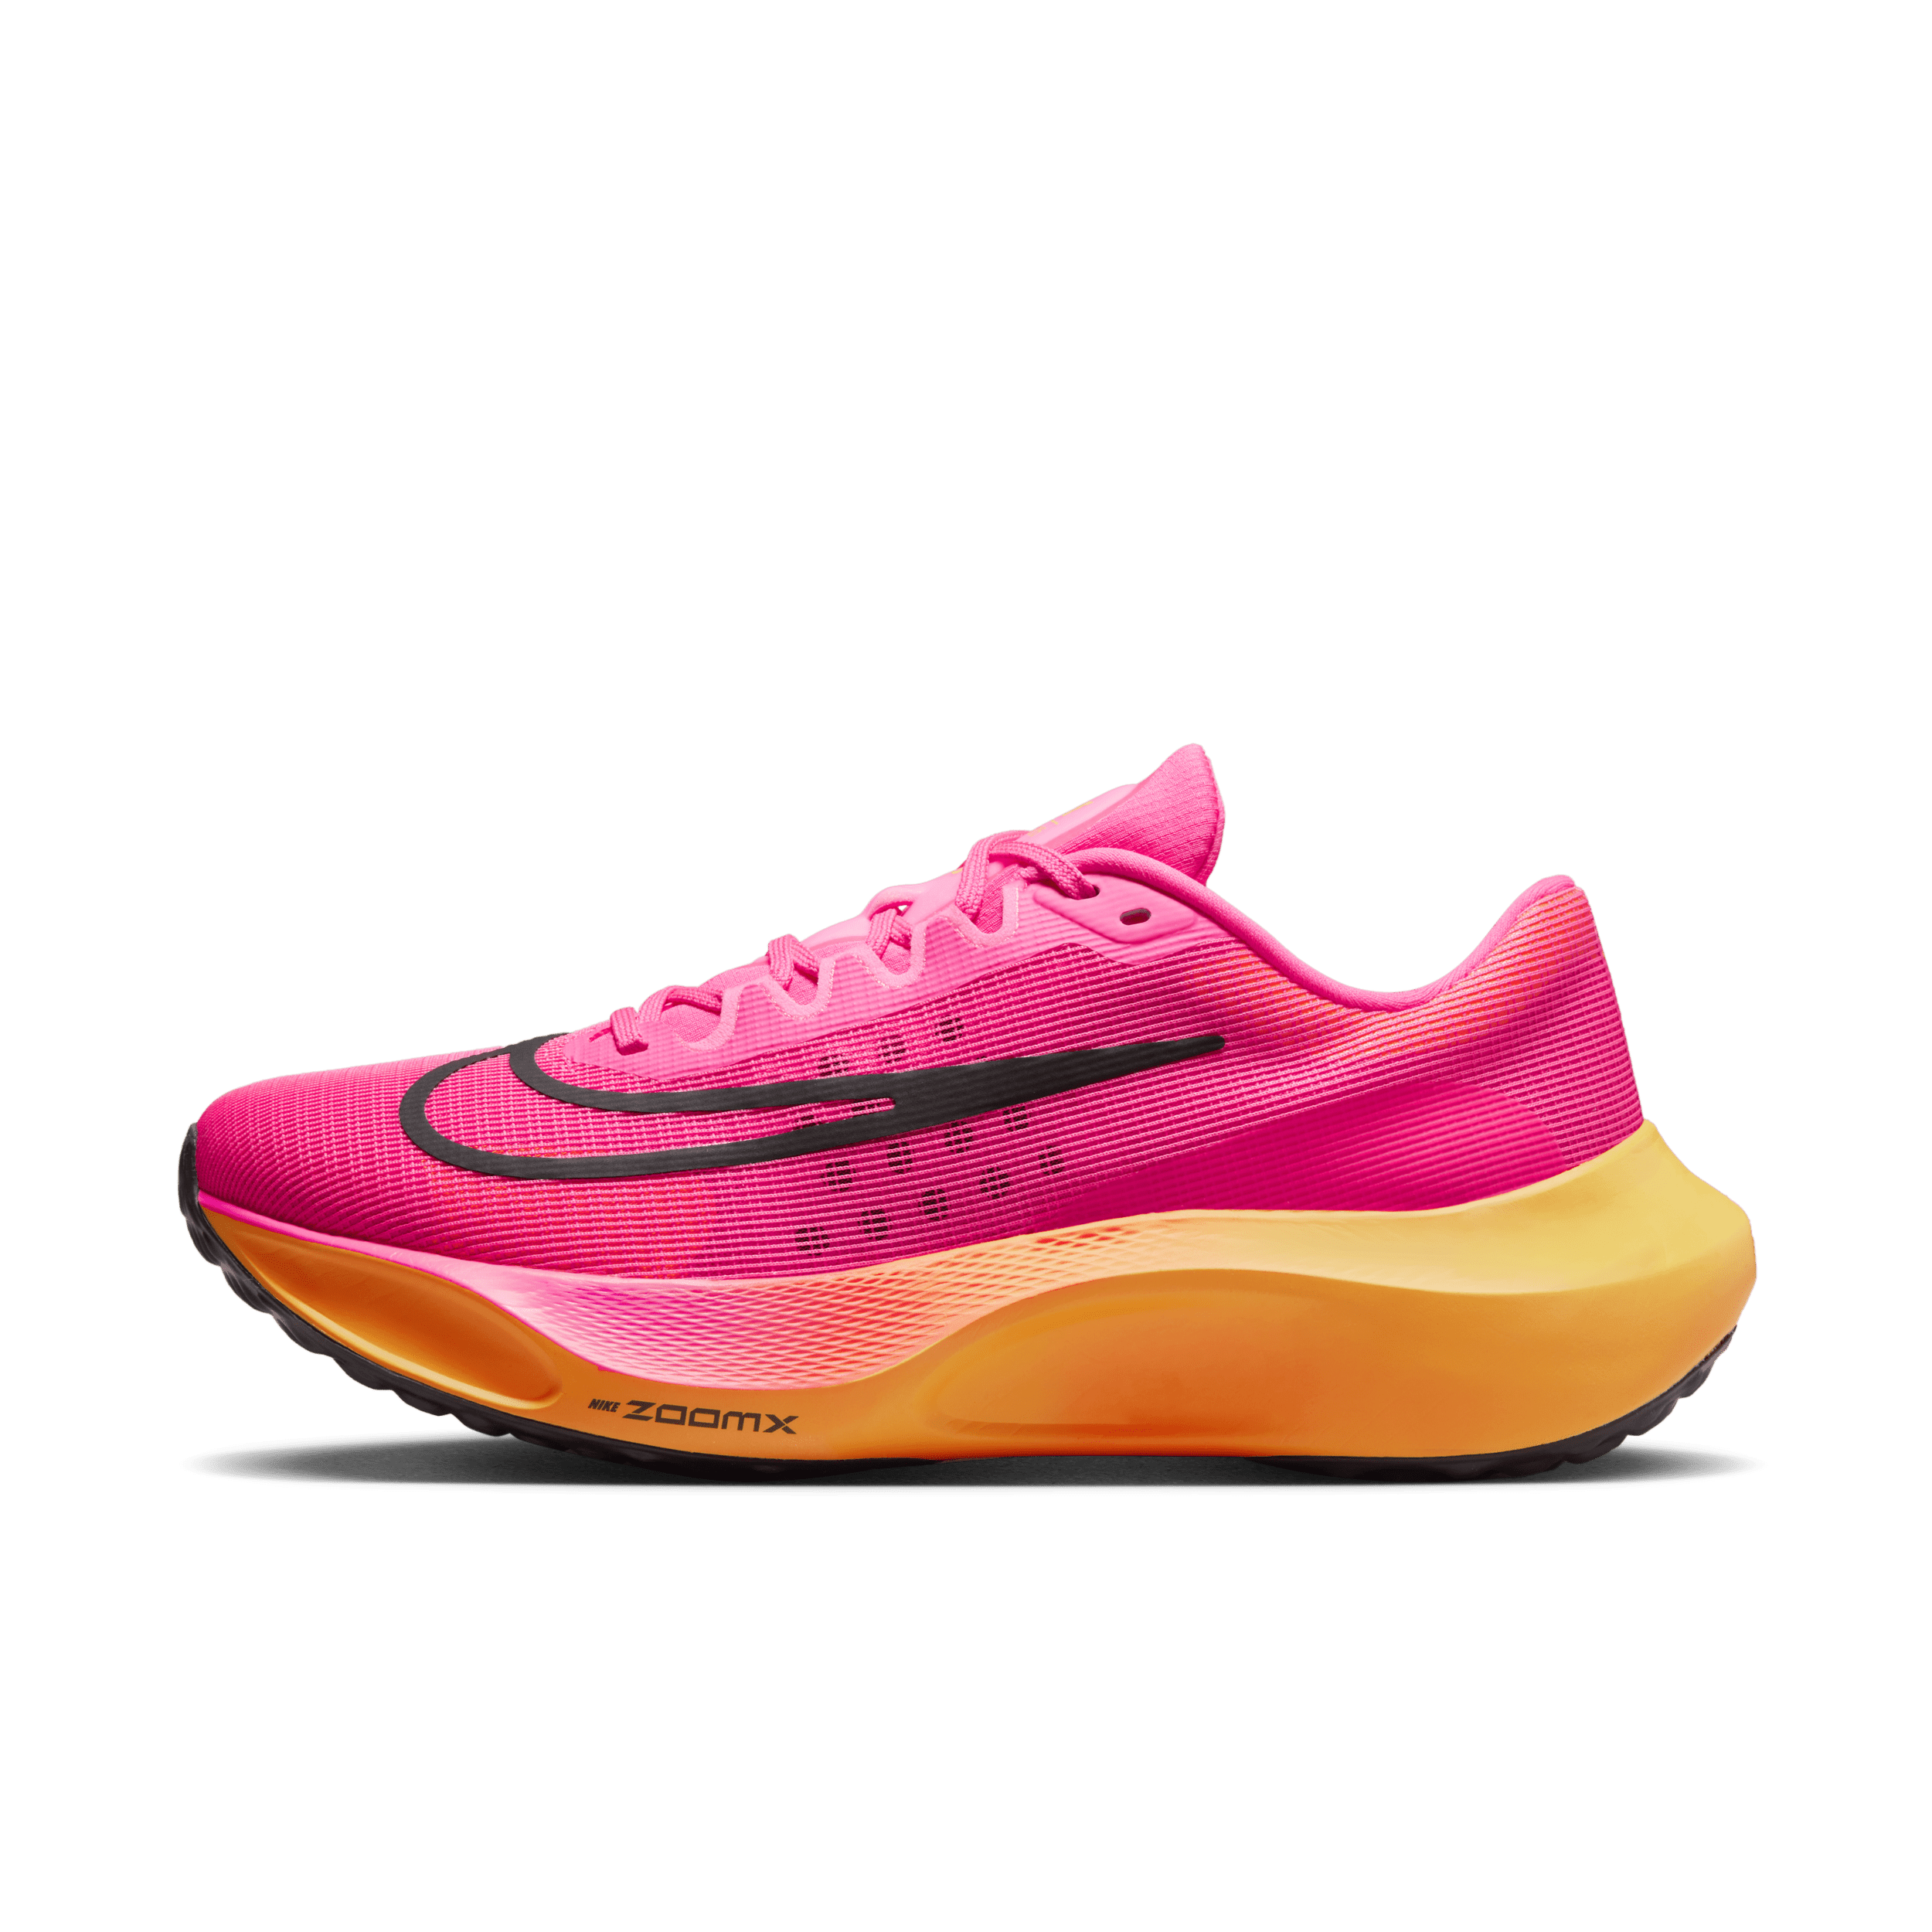 Incentivo Corteza Visible Zoom Fly 5Men's Road Running Shoes in KSA. Nike SA